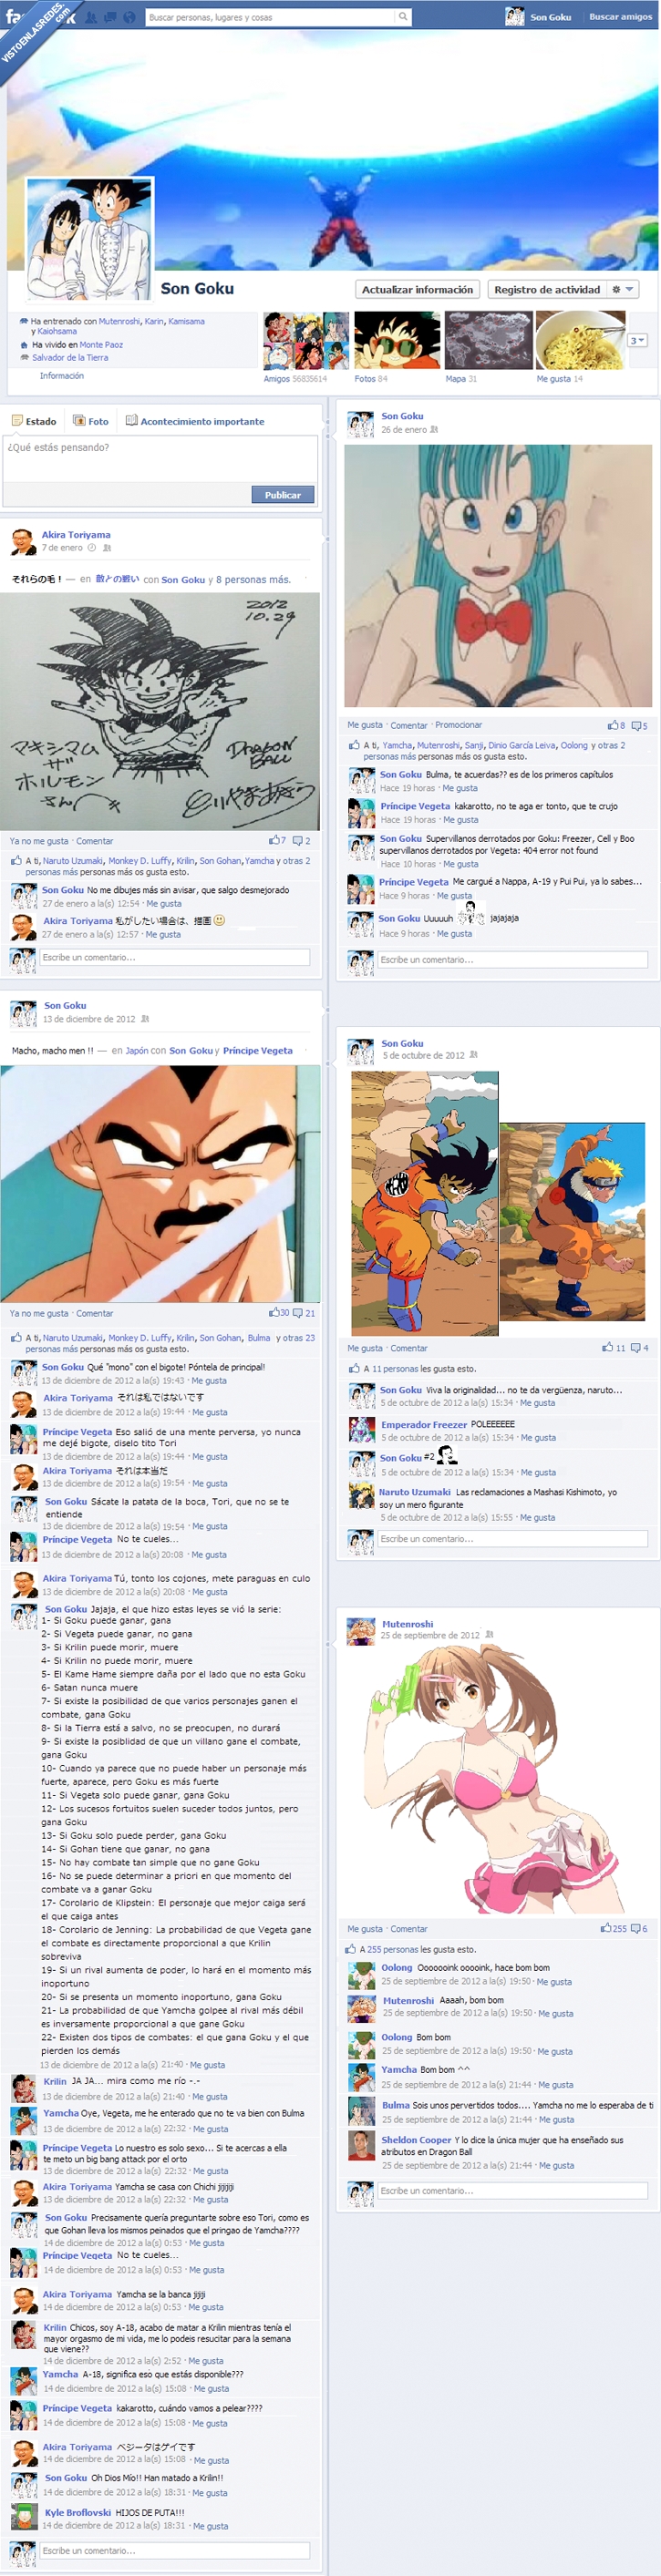 334705 - El facebook de Son Goku